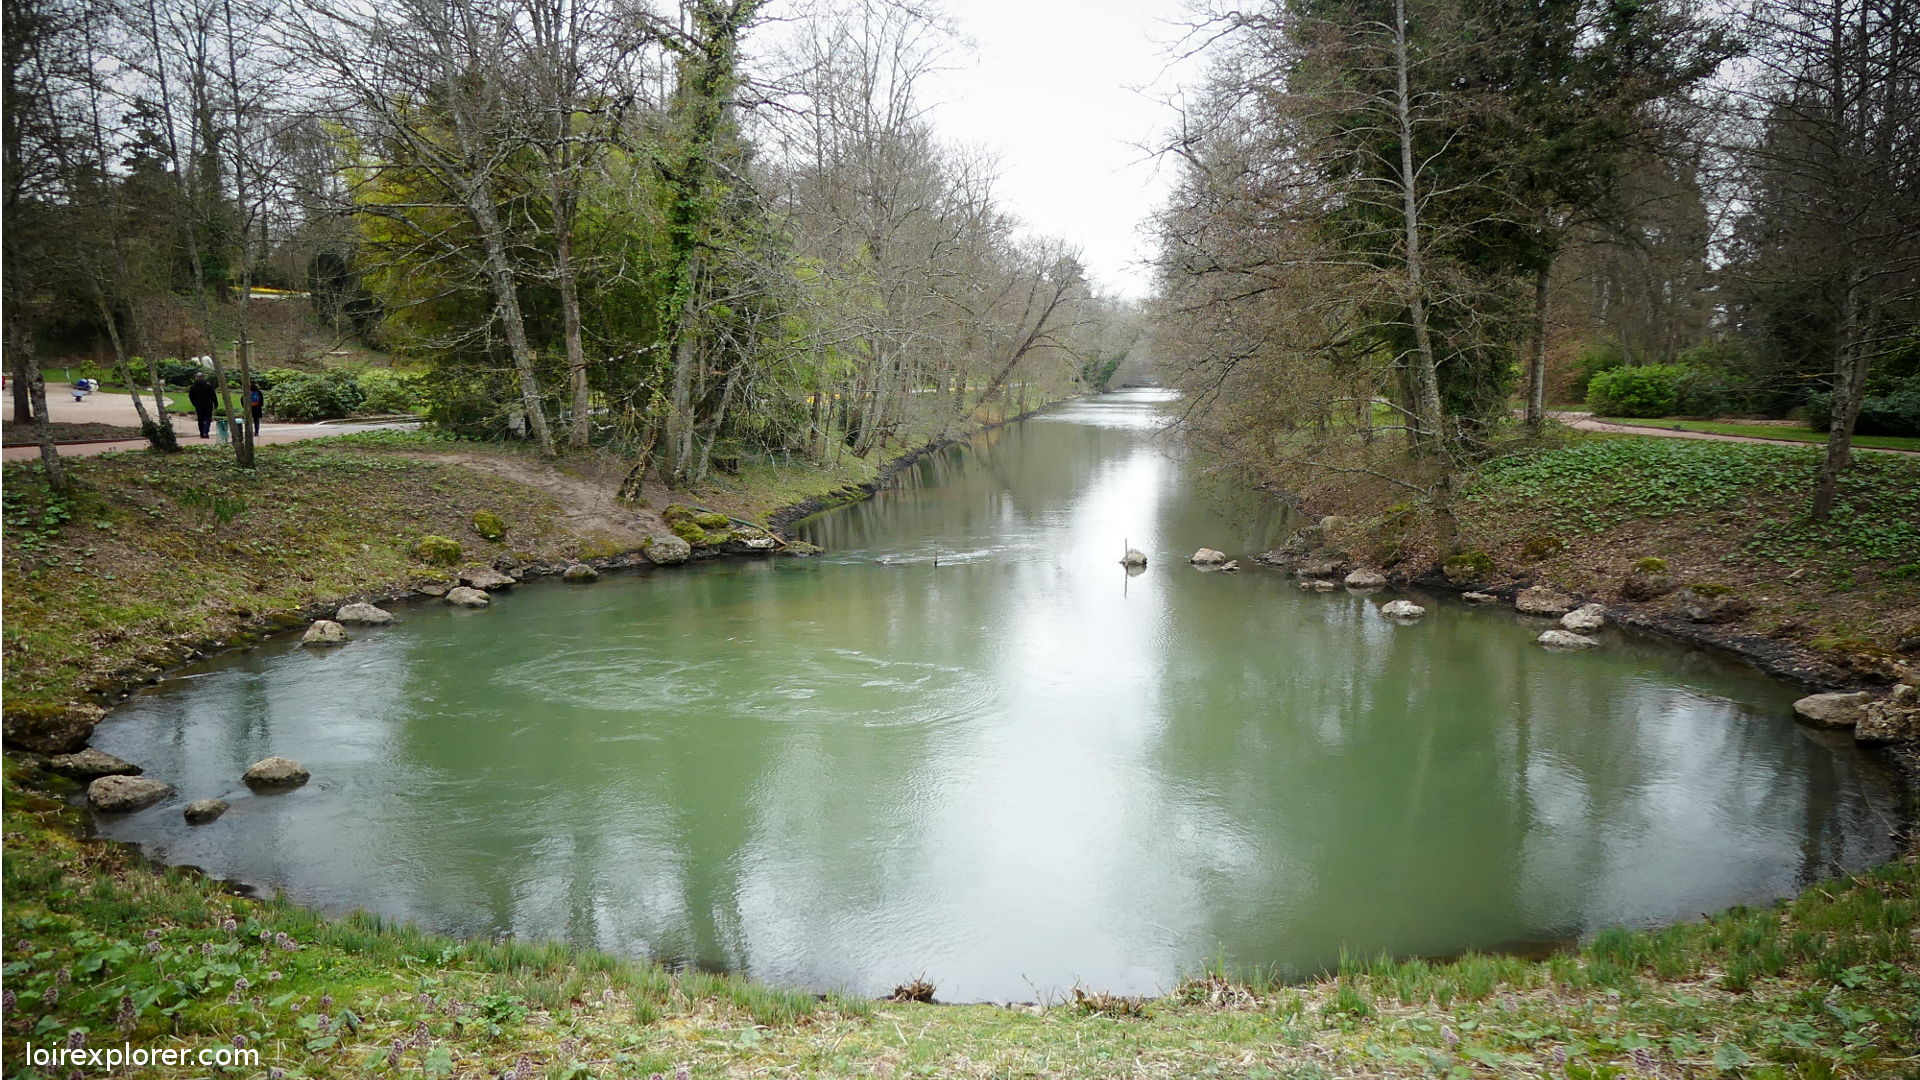 Le Loiret rivière insolite : Pourquoi sa source est si stupéfiante